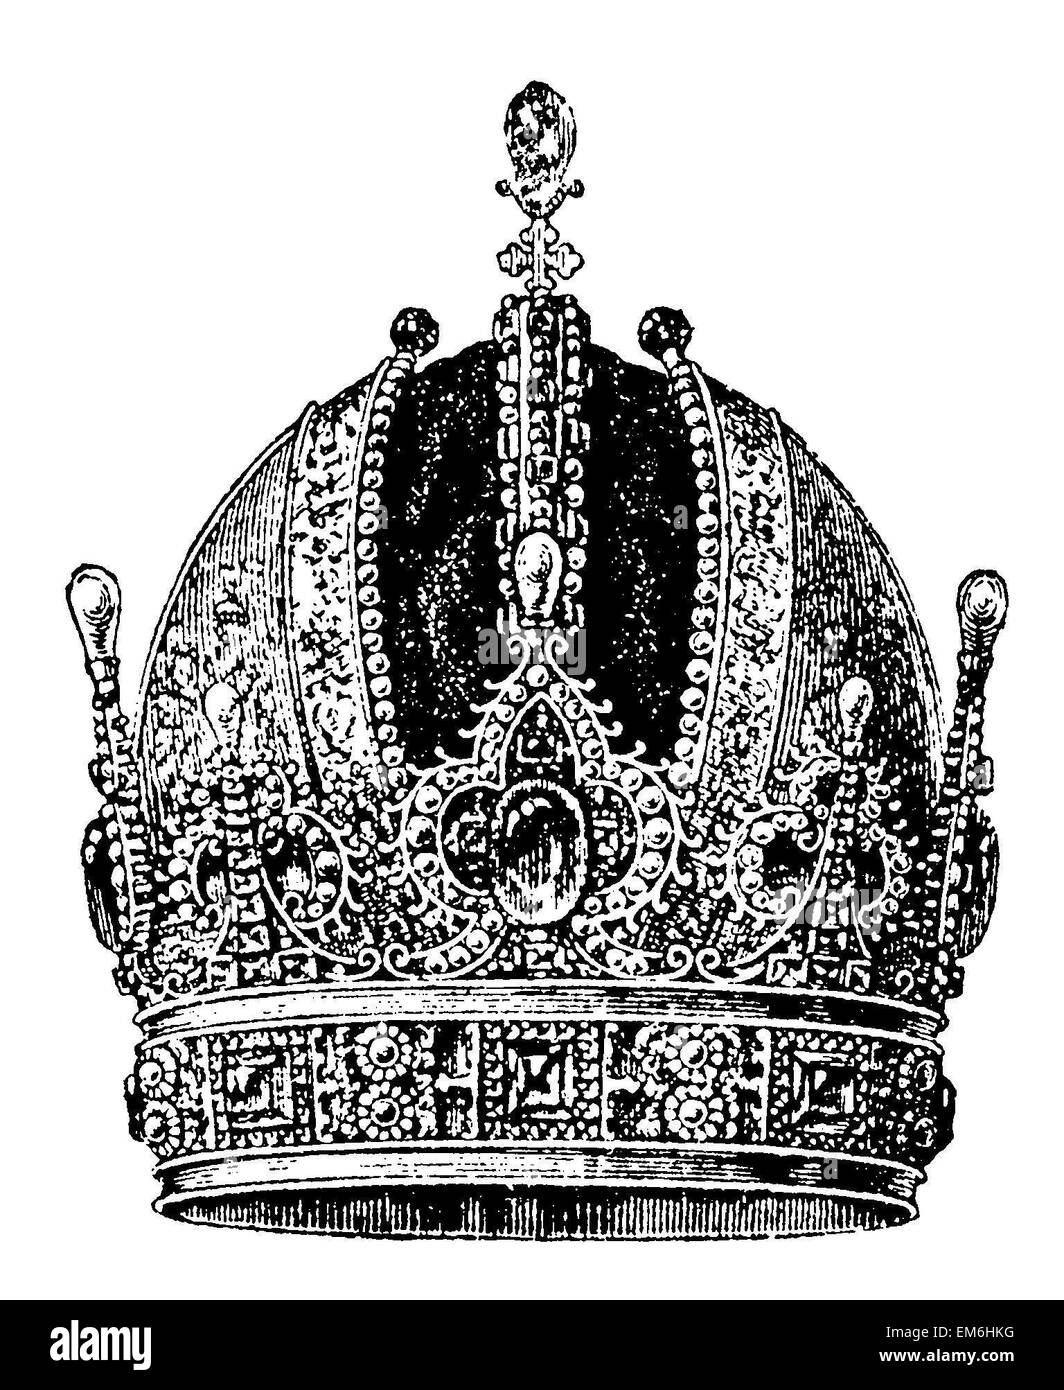 La corona imperial austríaca Foto de stock